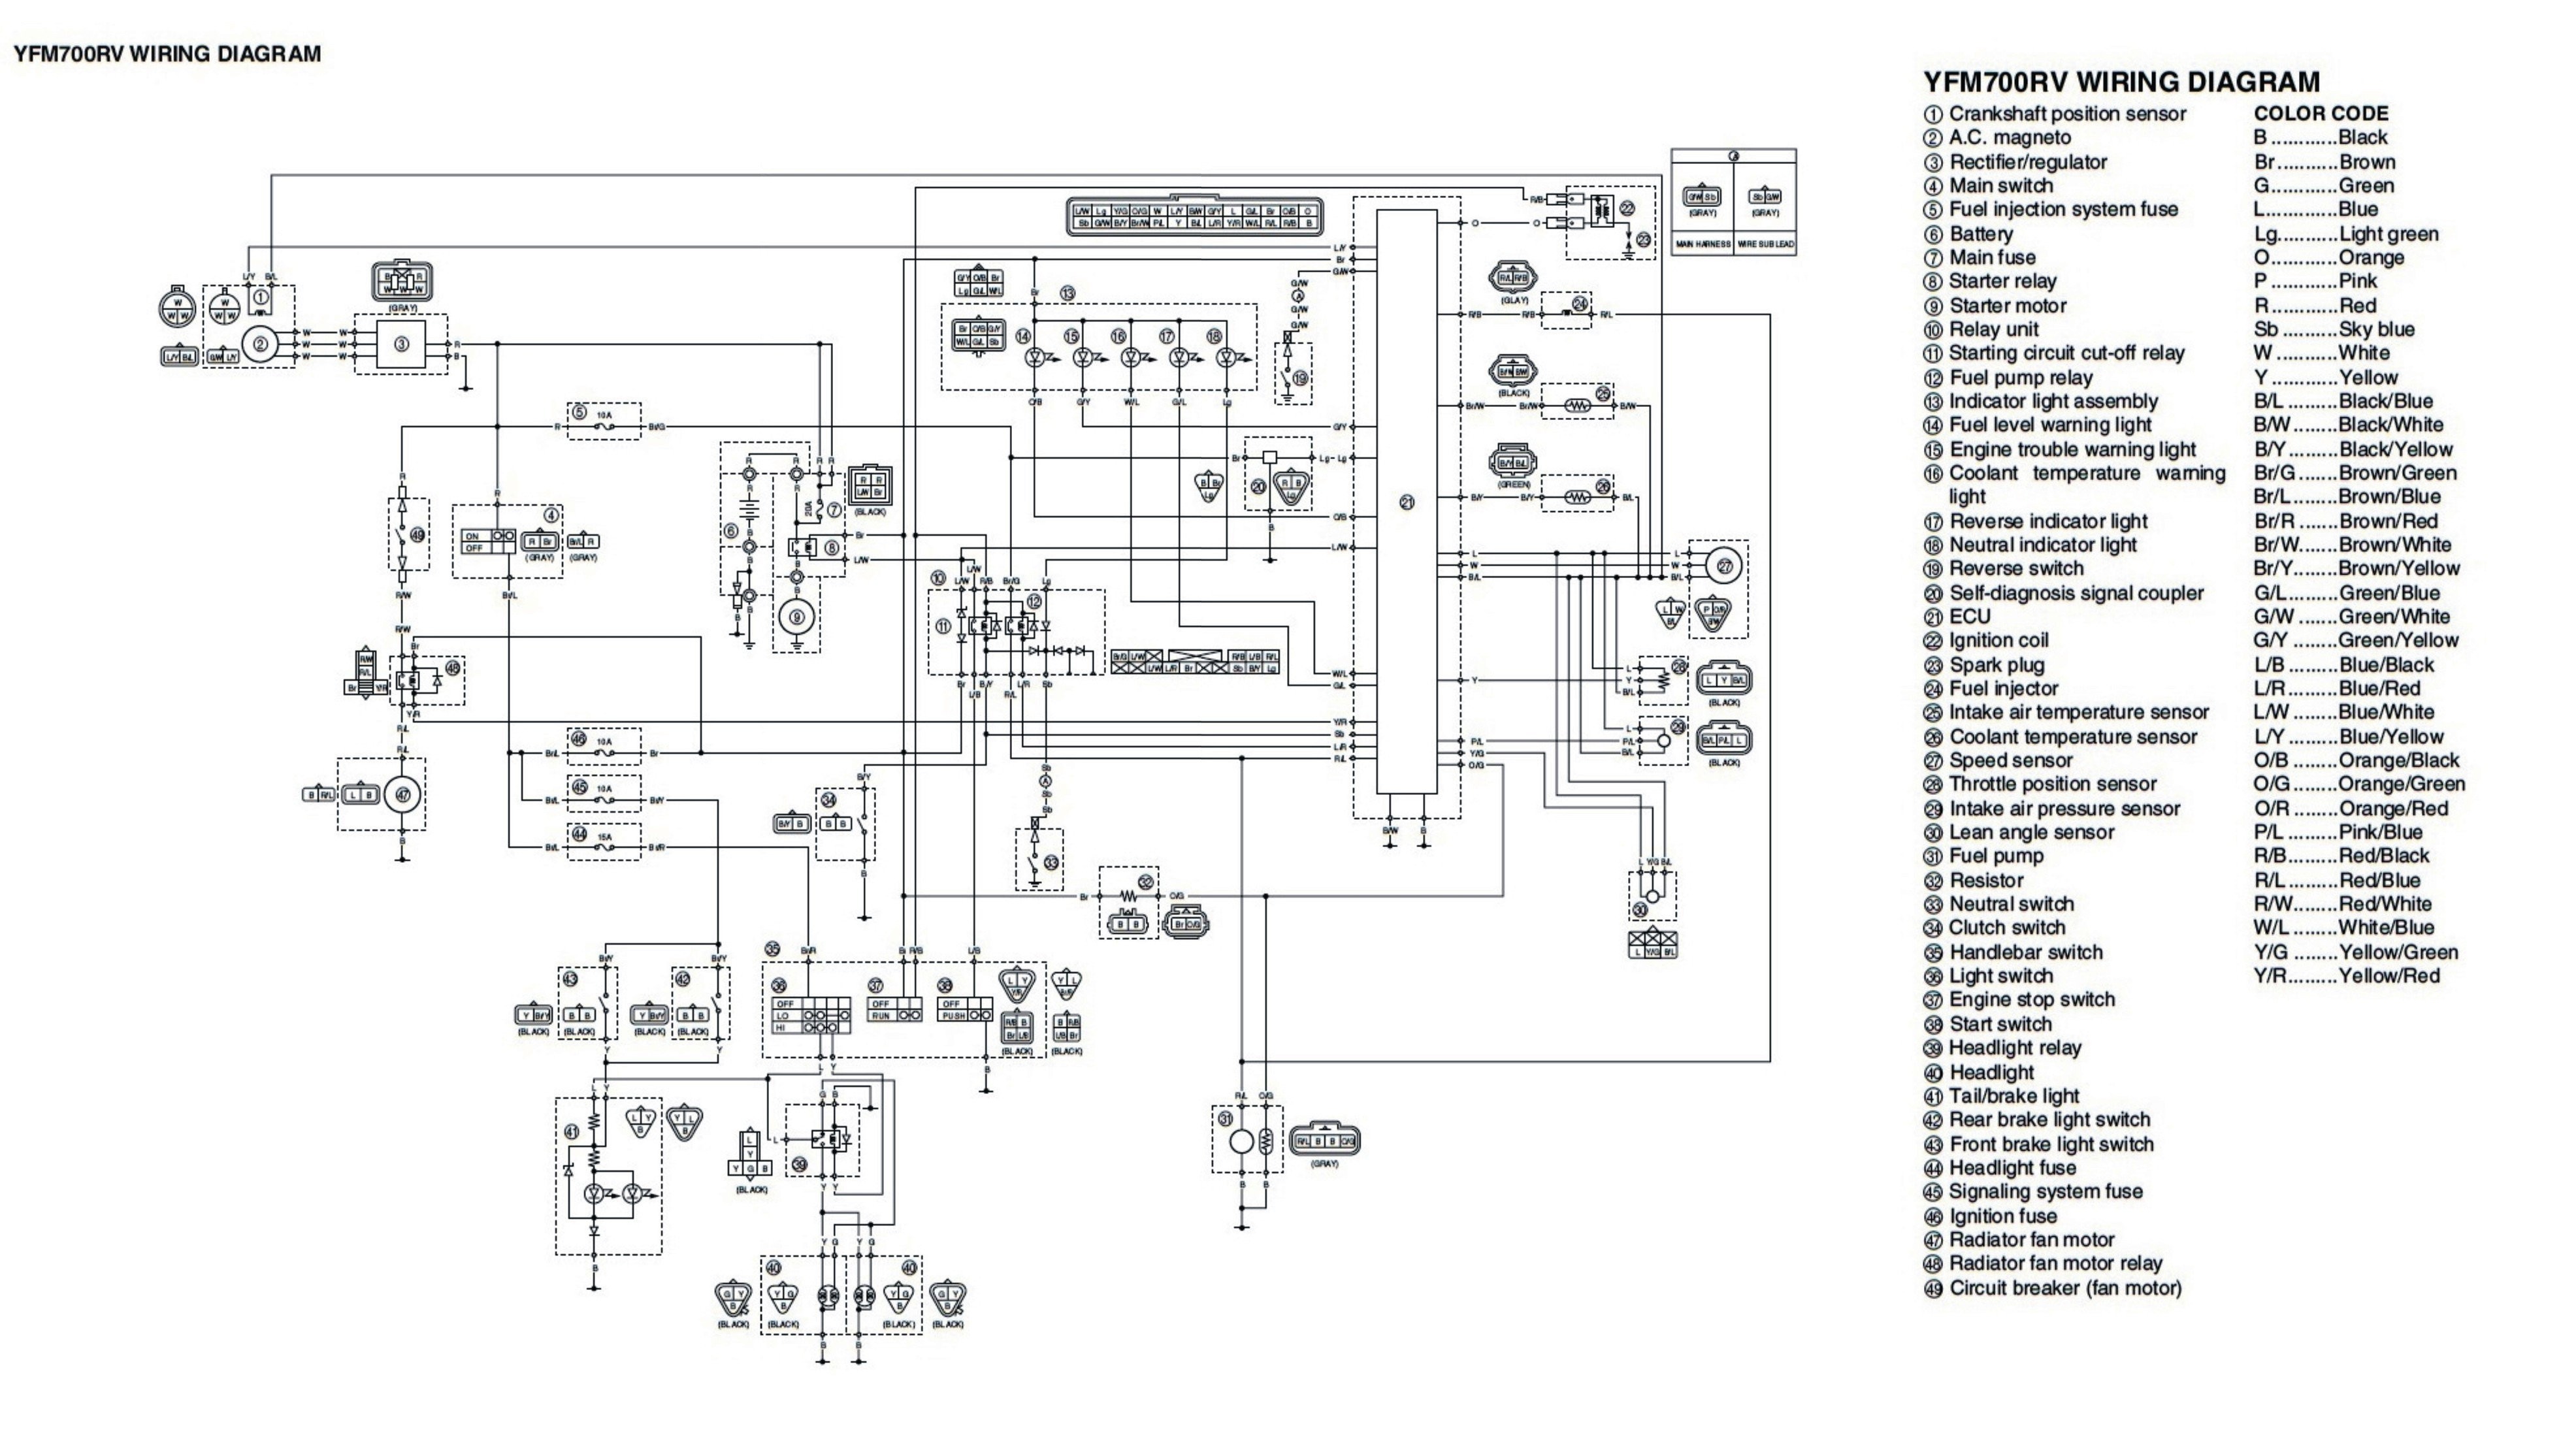 2002 Suzuki Gsxr 1000 Wiring Diagram - Cars Wiring Diagram